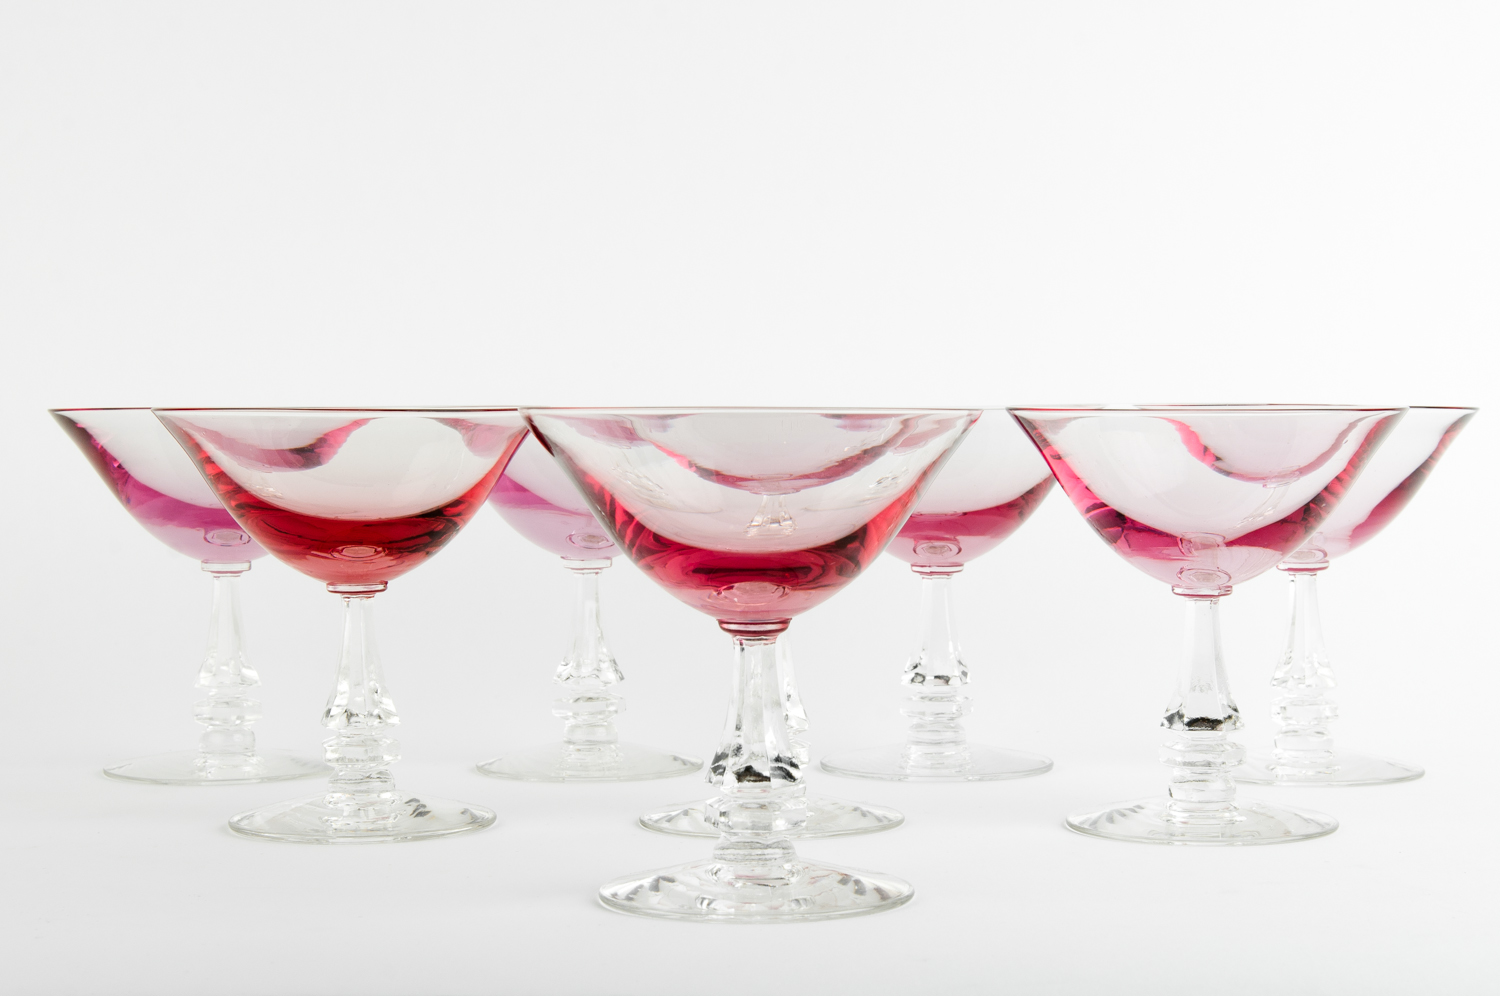 Set 8 Etched Crystal Red / Wine Glasses. — La Maison Supreme Ltd.